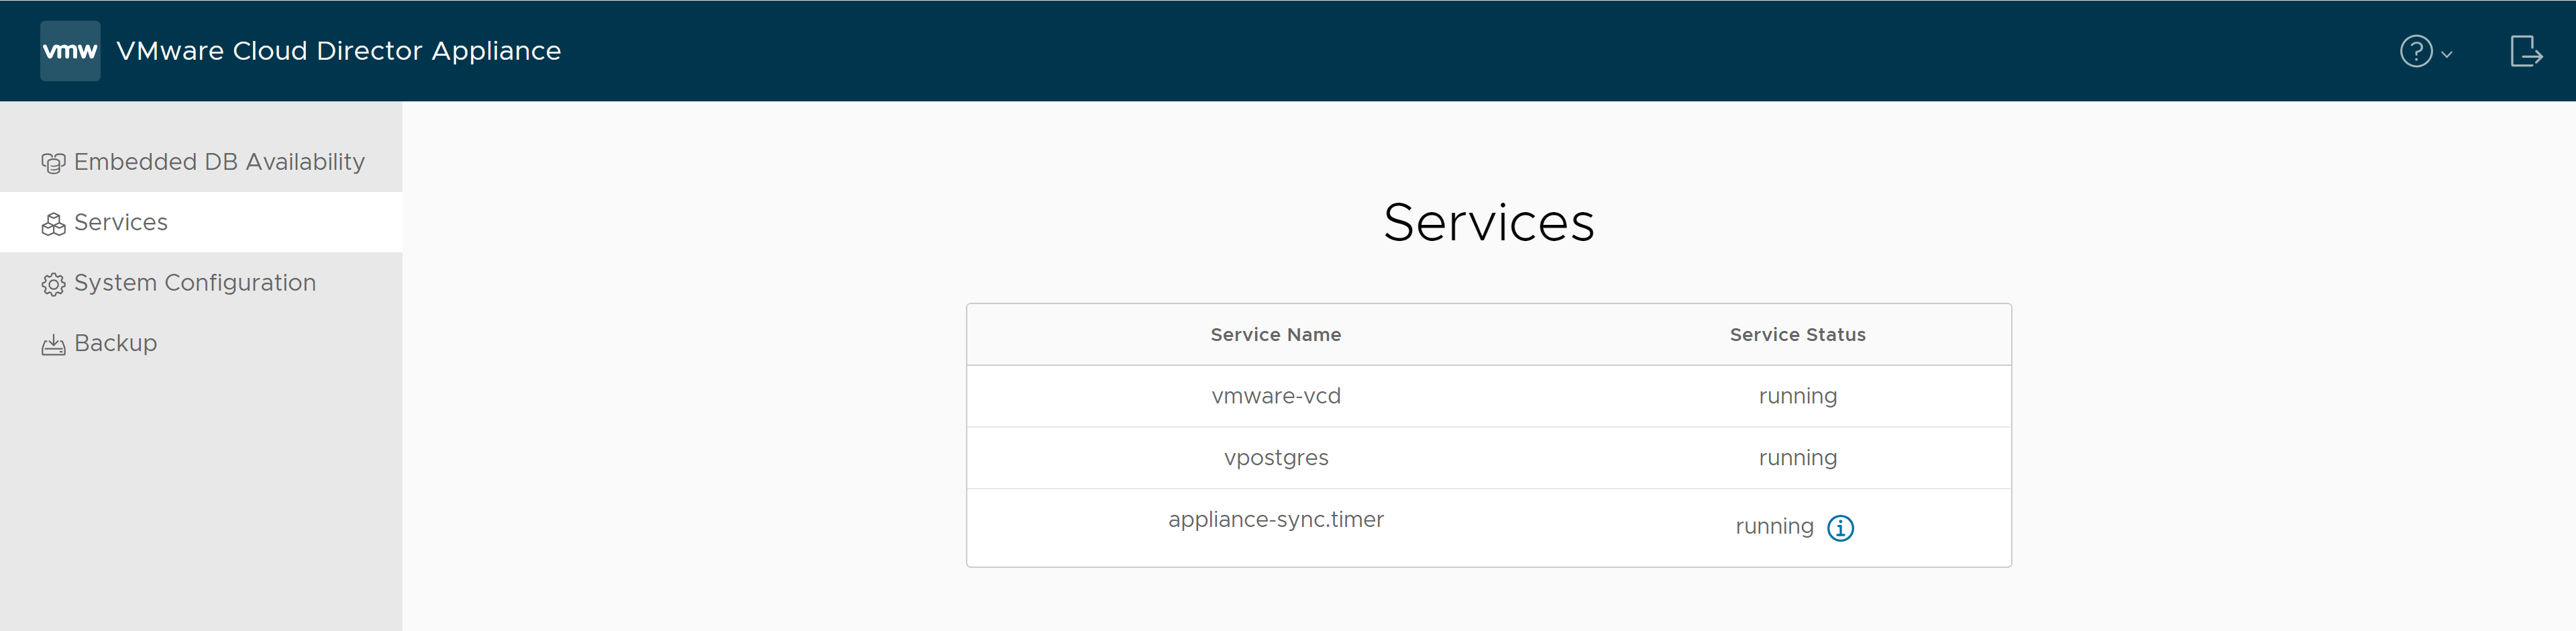 VMware Cloud Director アプライアンス管理ユーザー インターフェイスの [サービス] タブで、サービス名とそのステータスを確認できます。